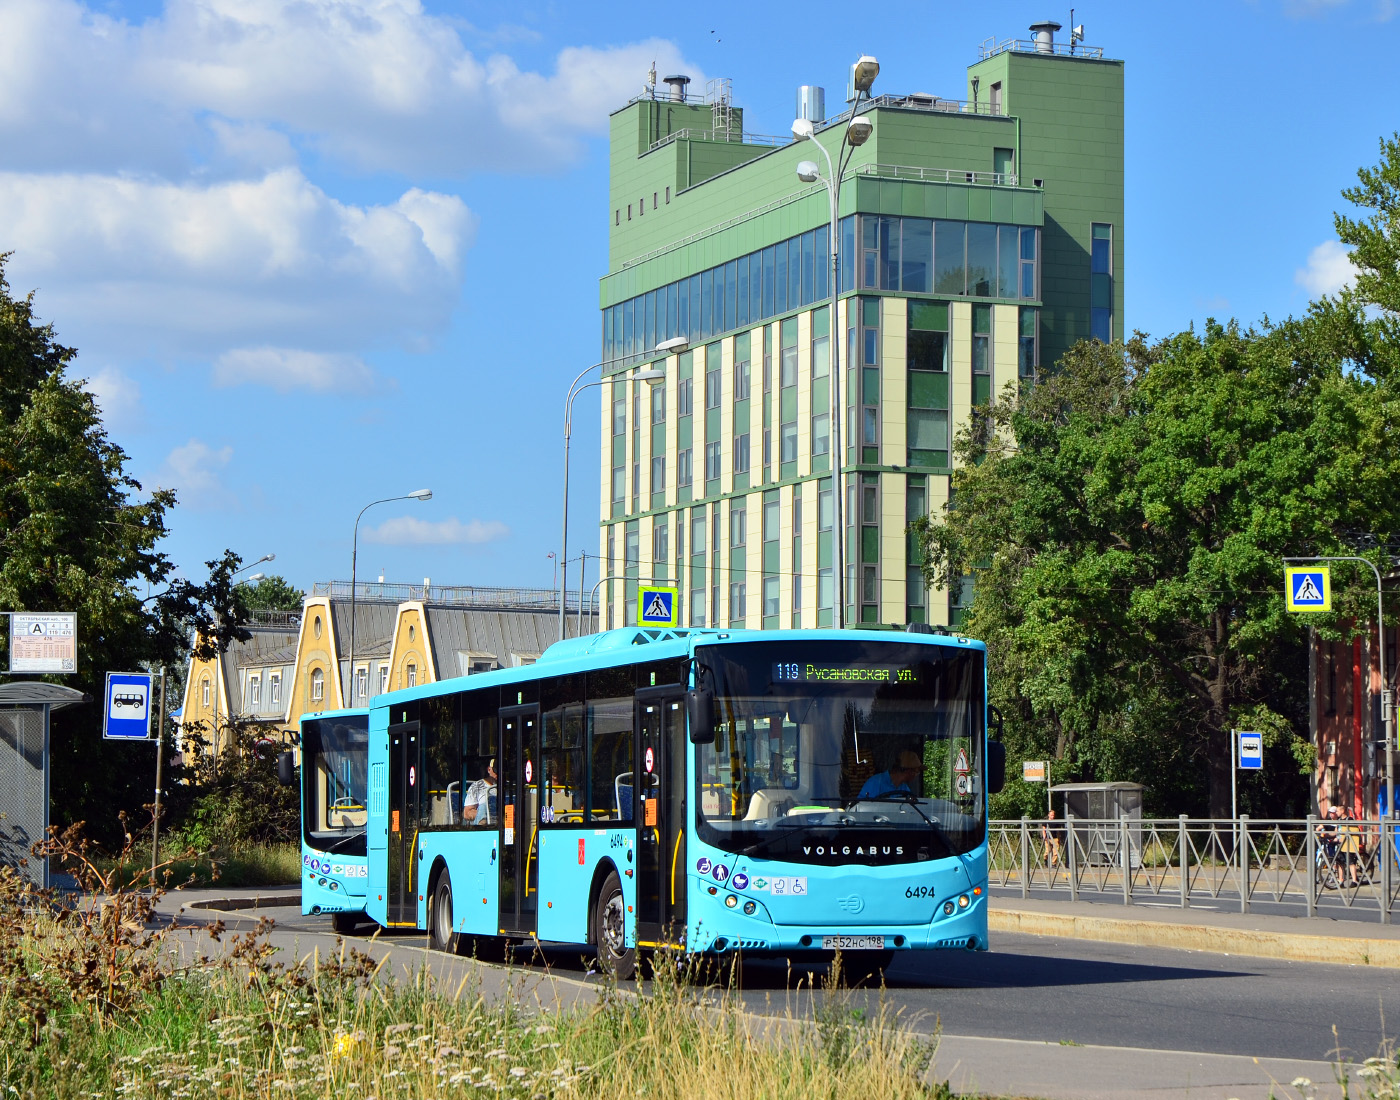 Sanktpēterburga, Volgabus-5270.G2 (LNG) № 6494